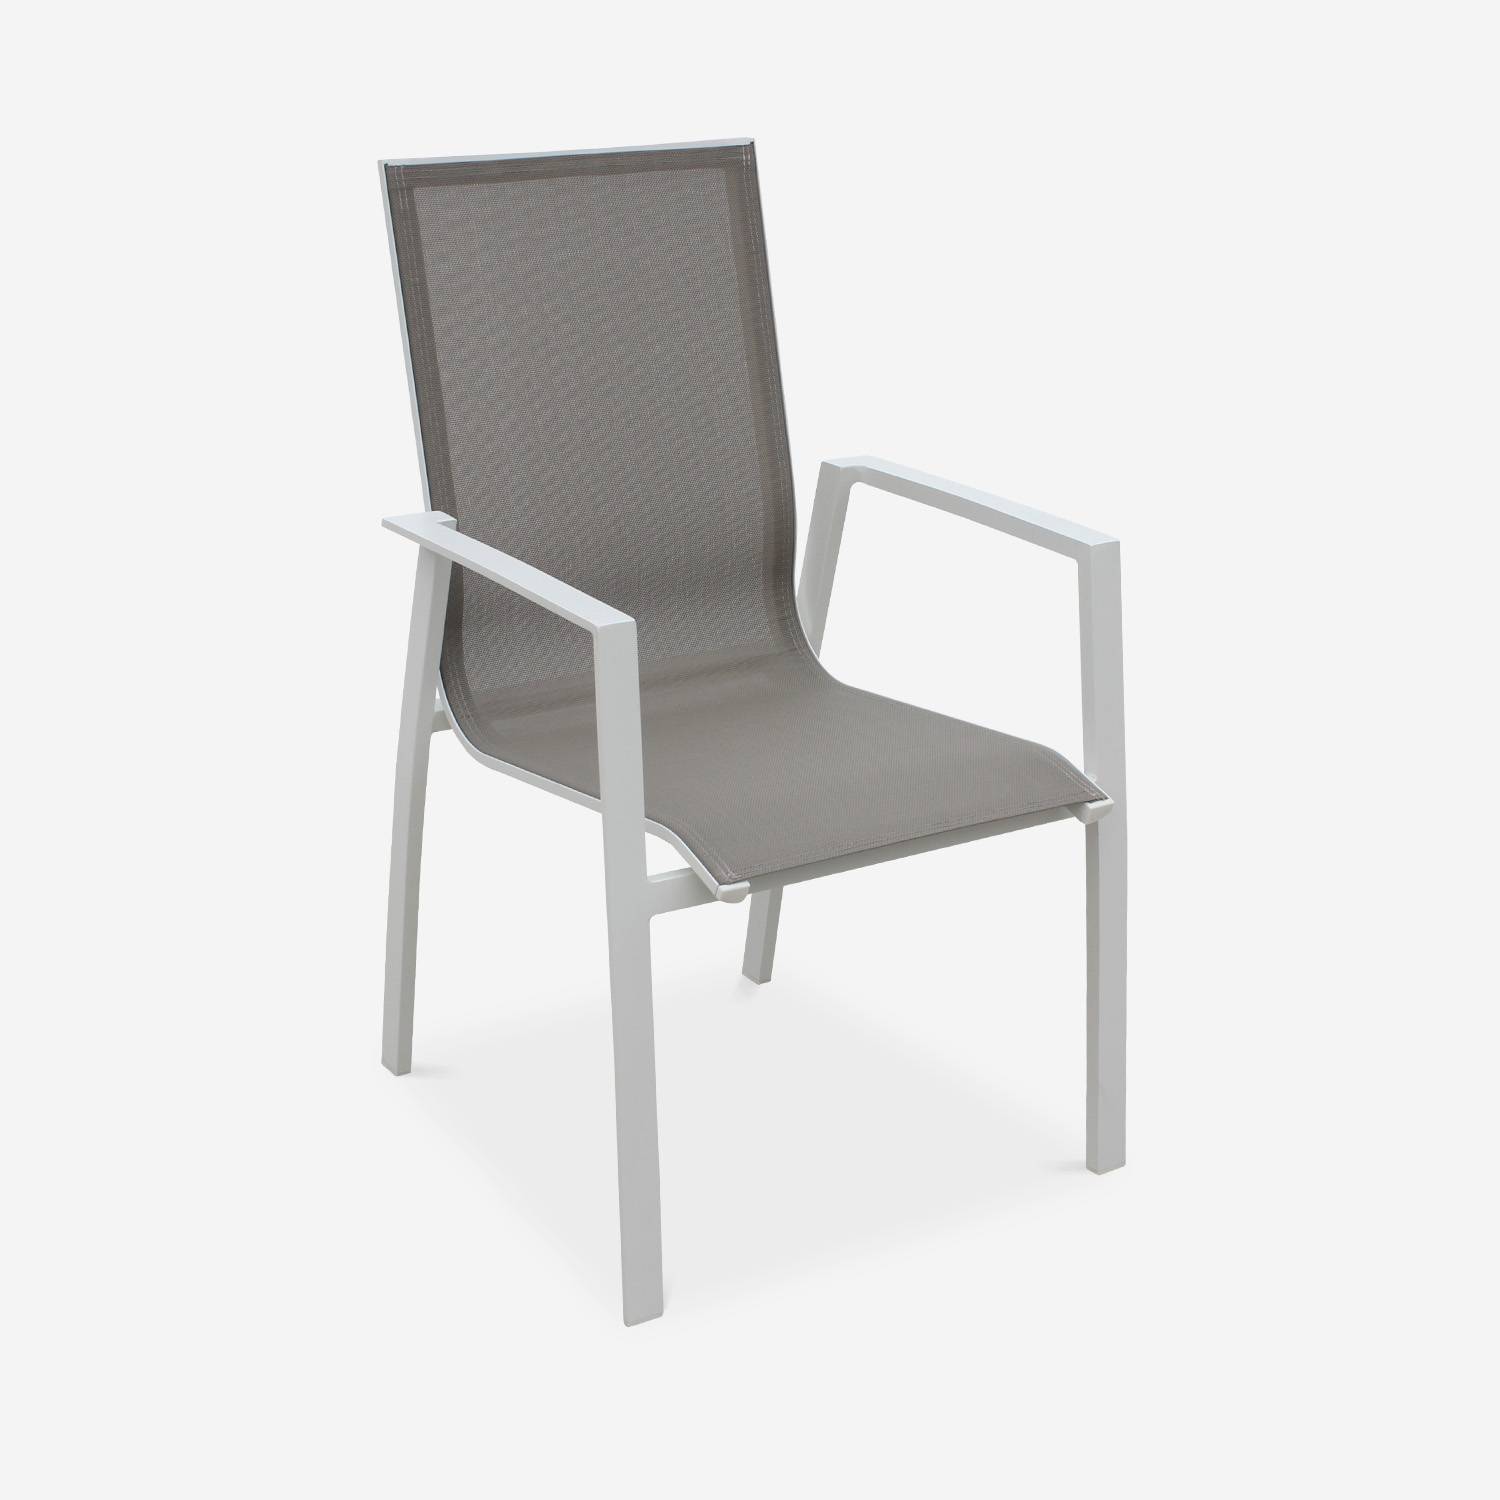 Juego de 2 sillas - Washington - Aluminio blanco y textileno pardo, apilables Photo2